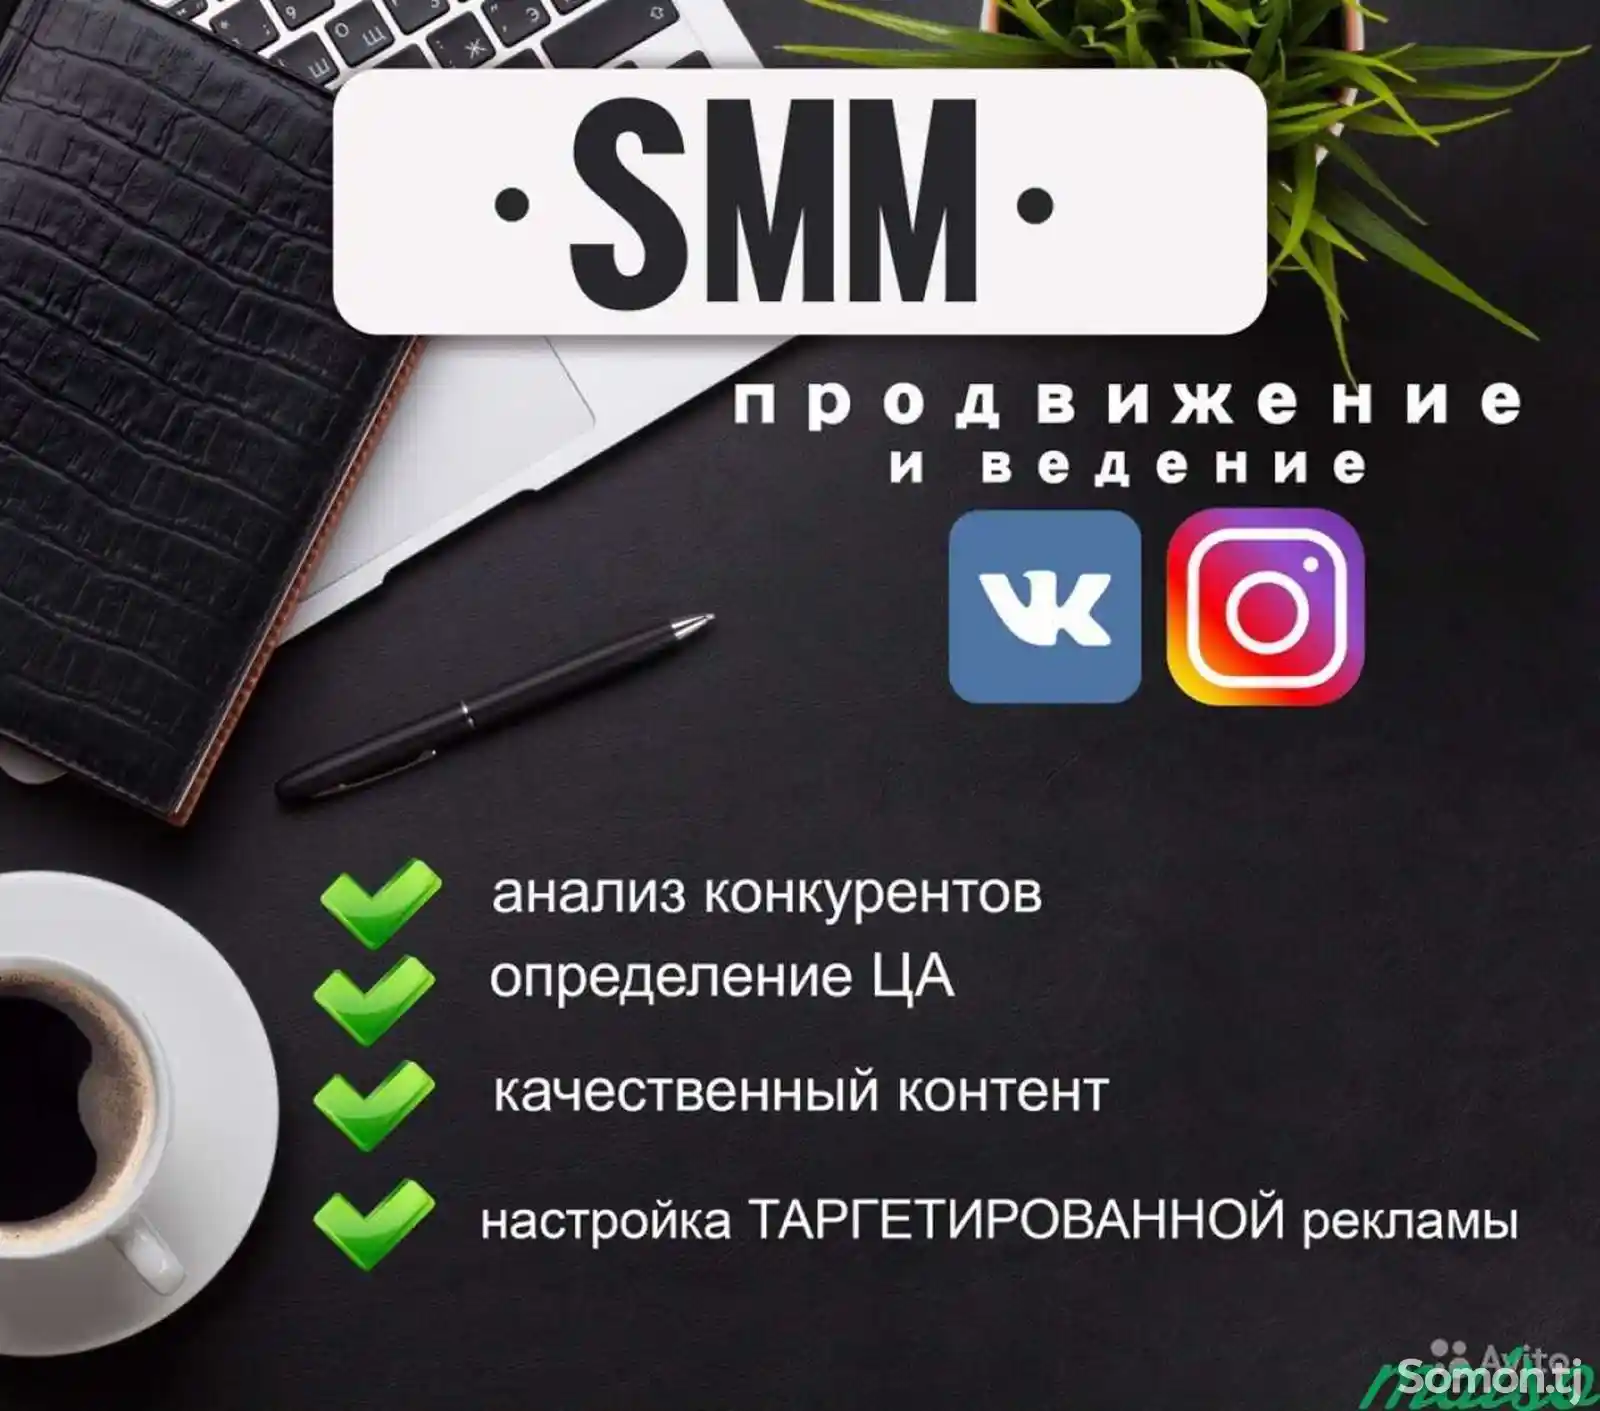 SMM- маркетинг-1